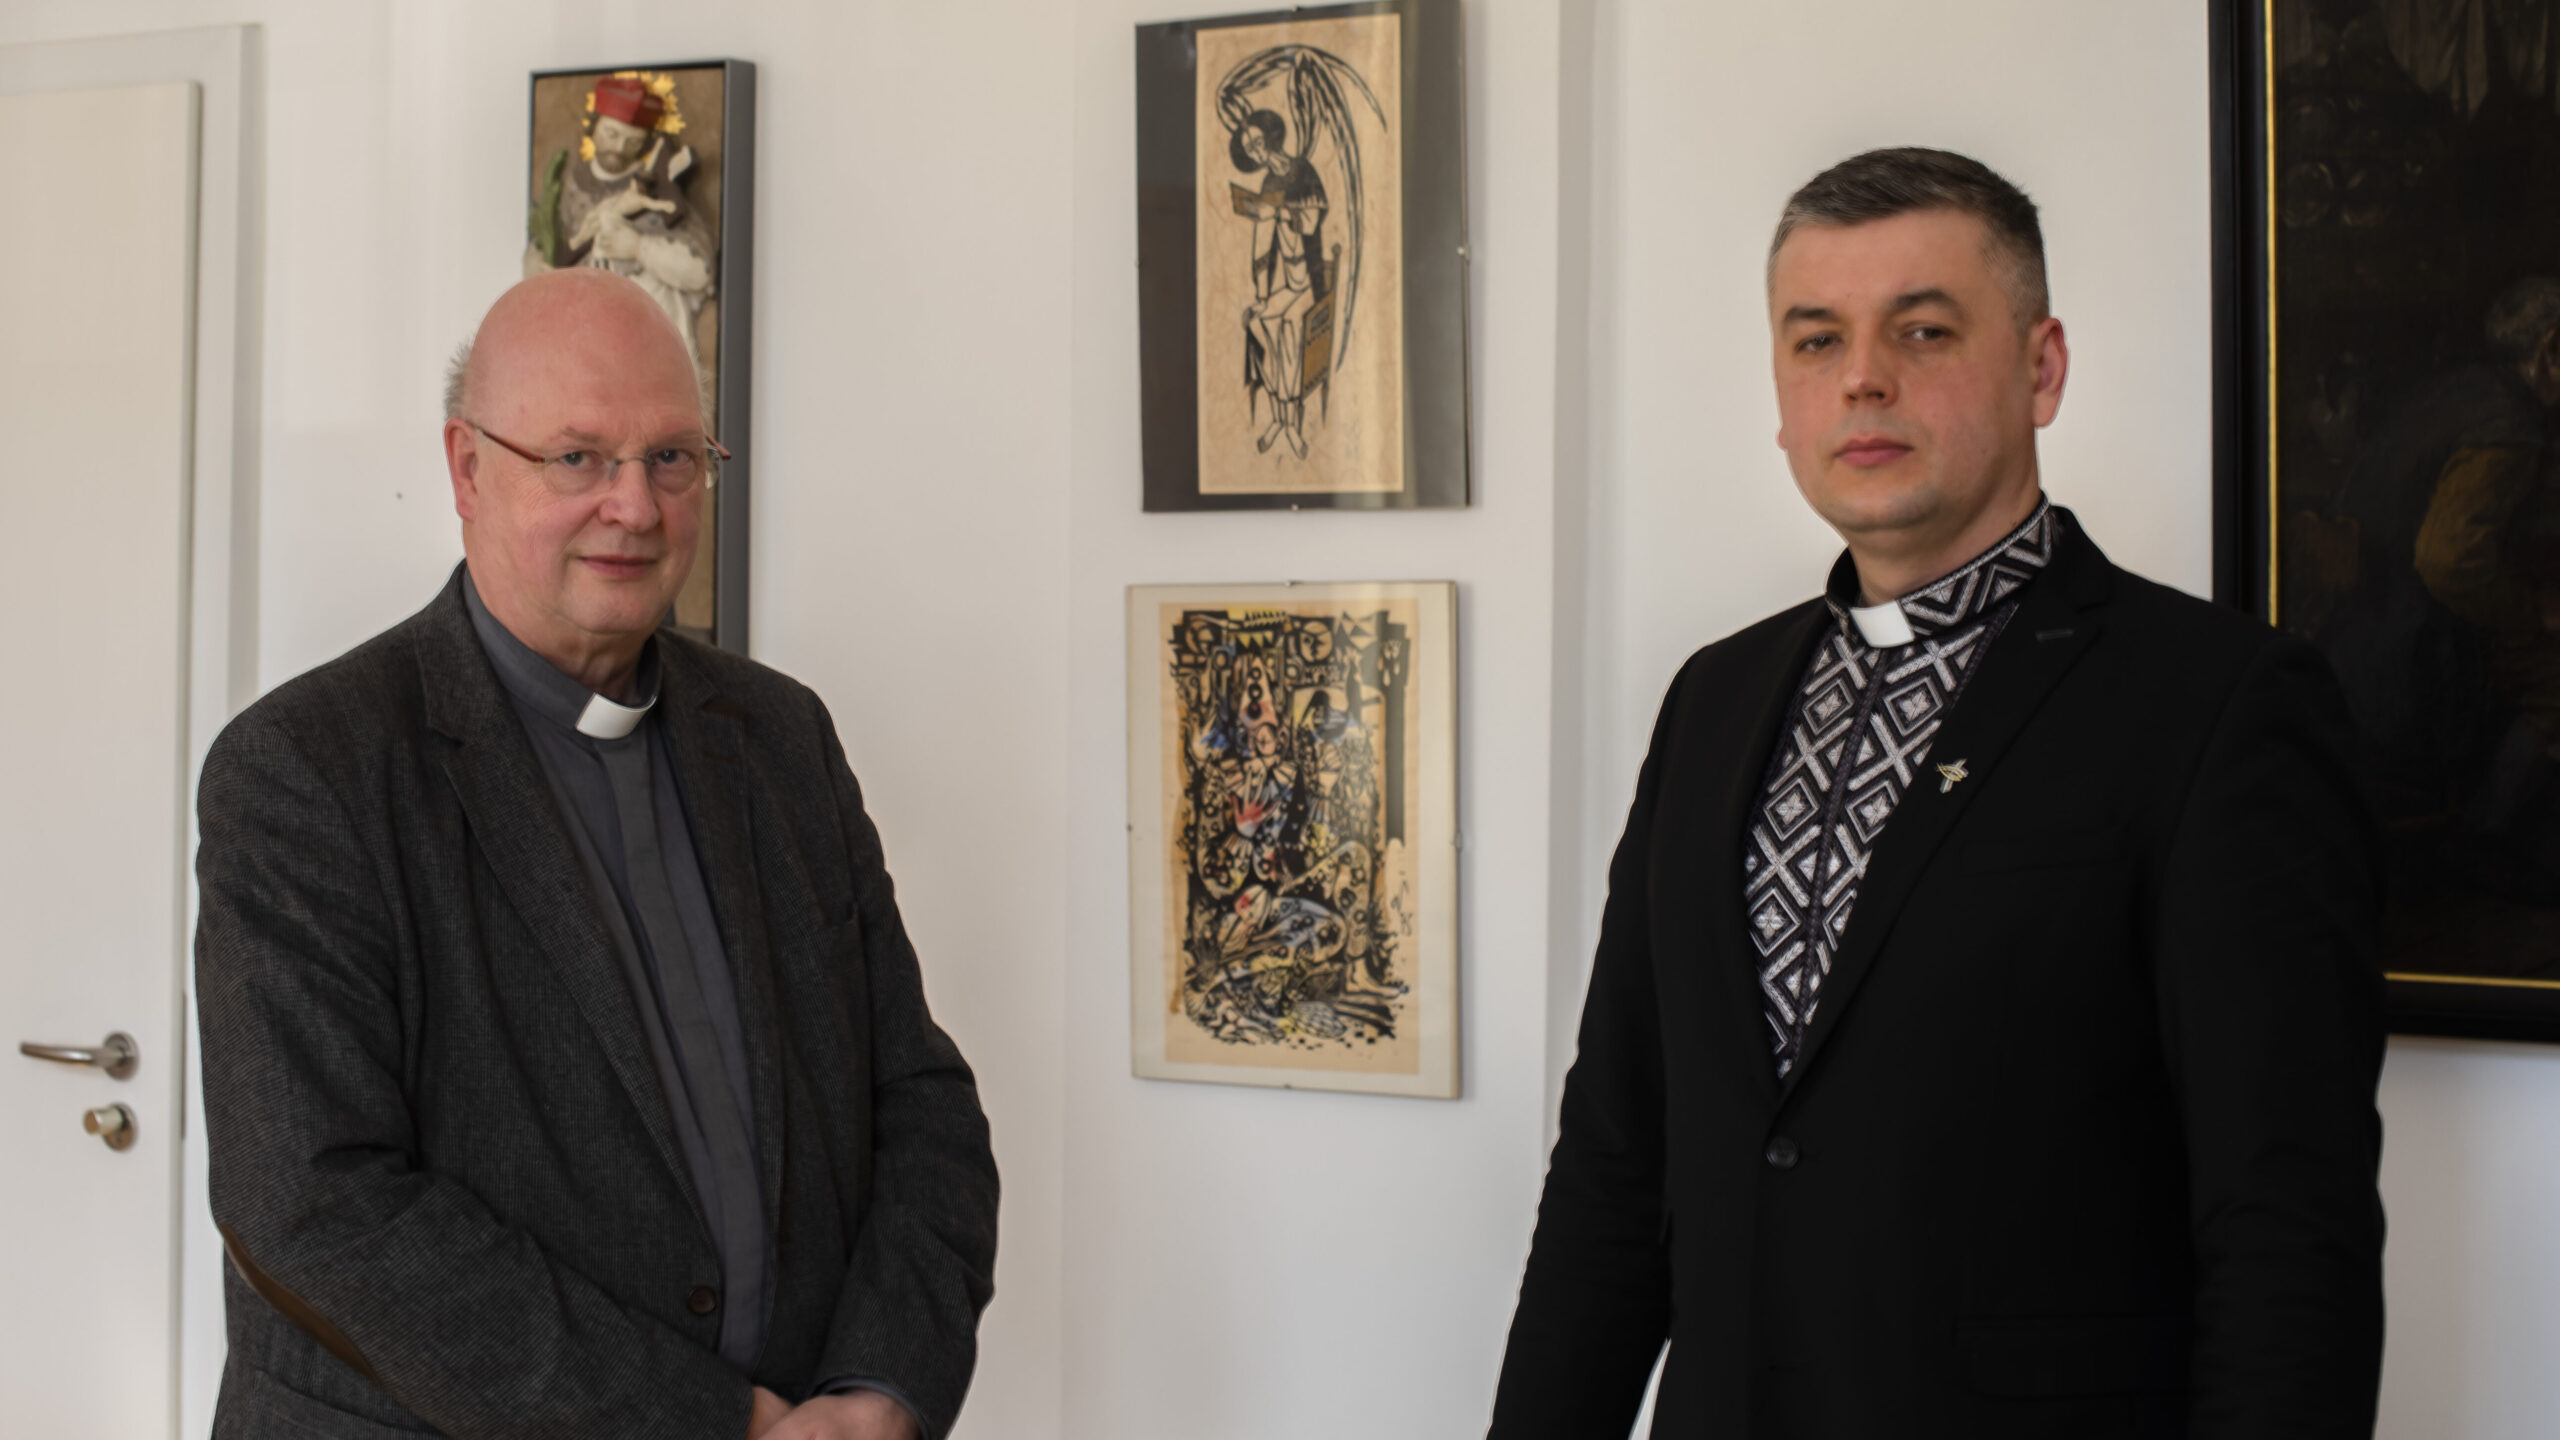 Generalvikar Alfons Hardt hat den Vikar der ukrainischen Gemeinde in Paderborn, Ihor Tril, eingeladen, um sich von ihm die Situation in der Ukriane schildern zu lassen.